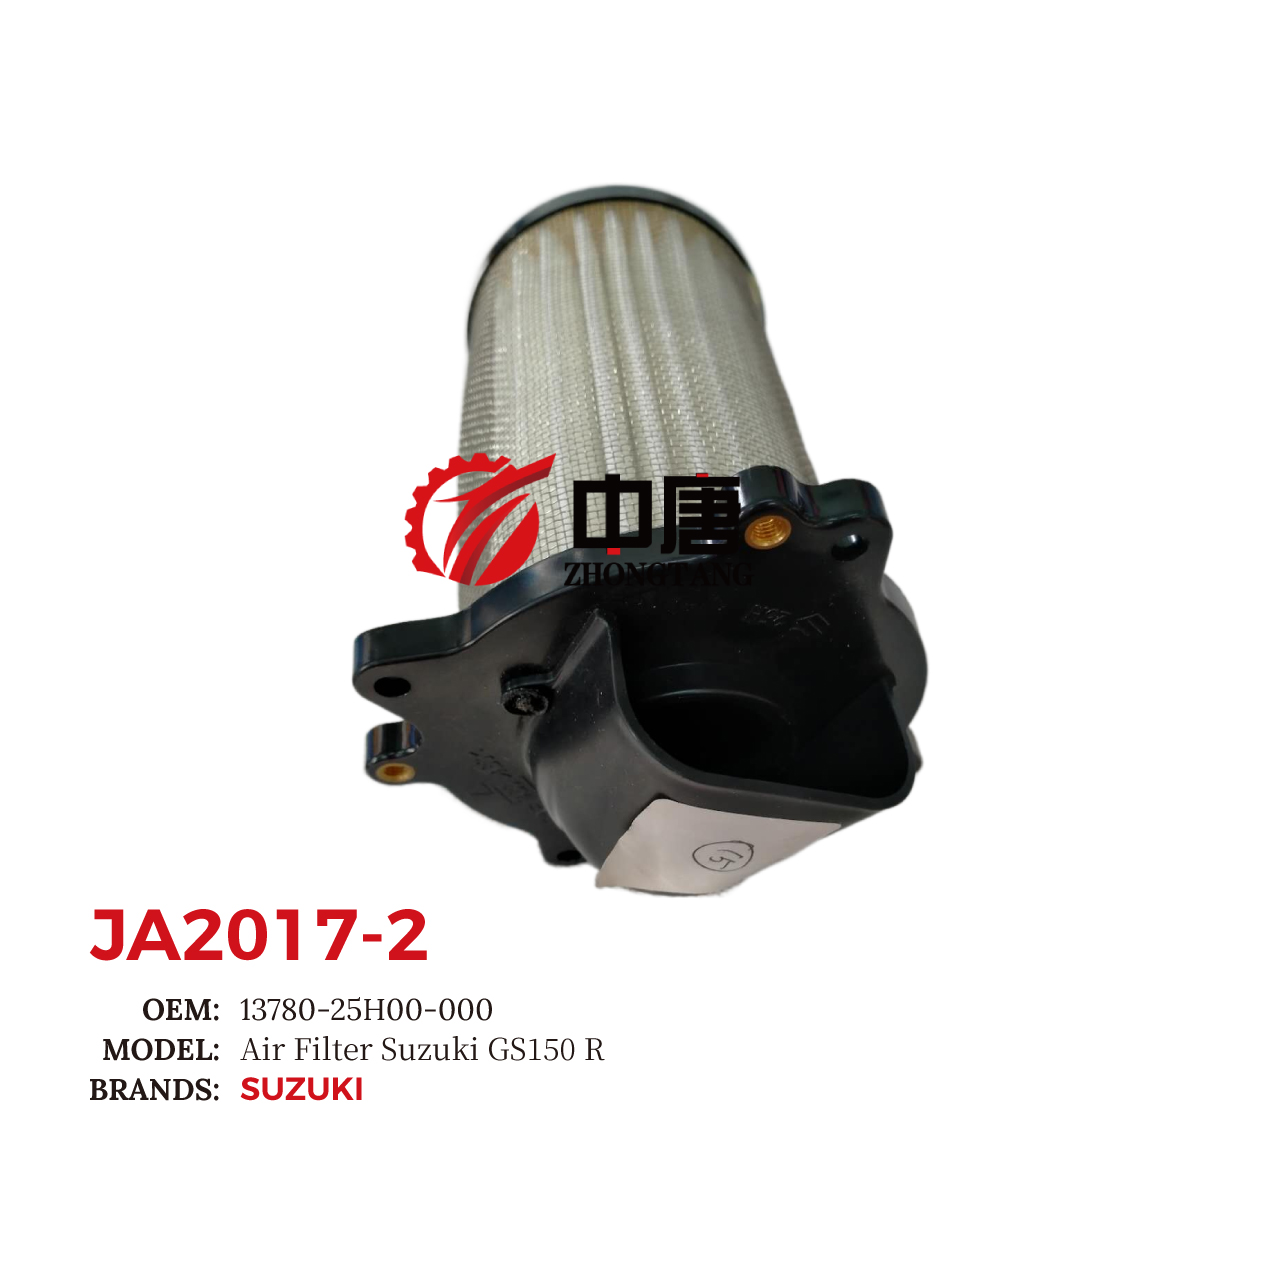 images/JA2017-2/JA2017-2_ZT_1.jpg